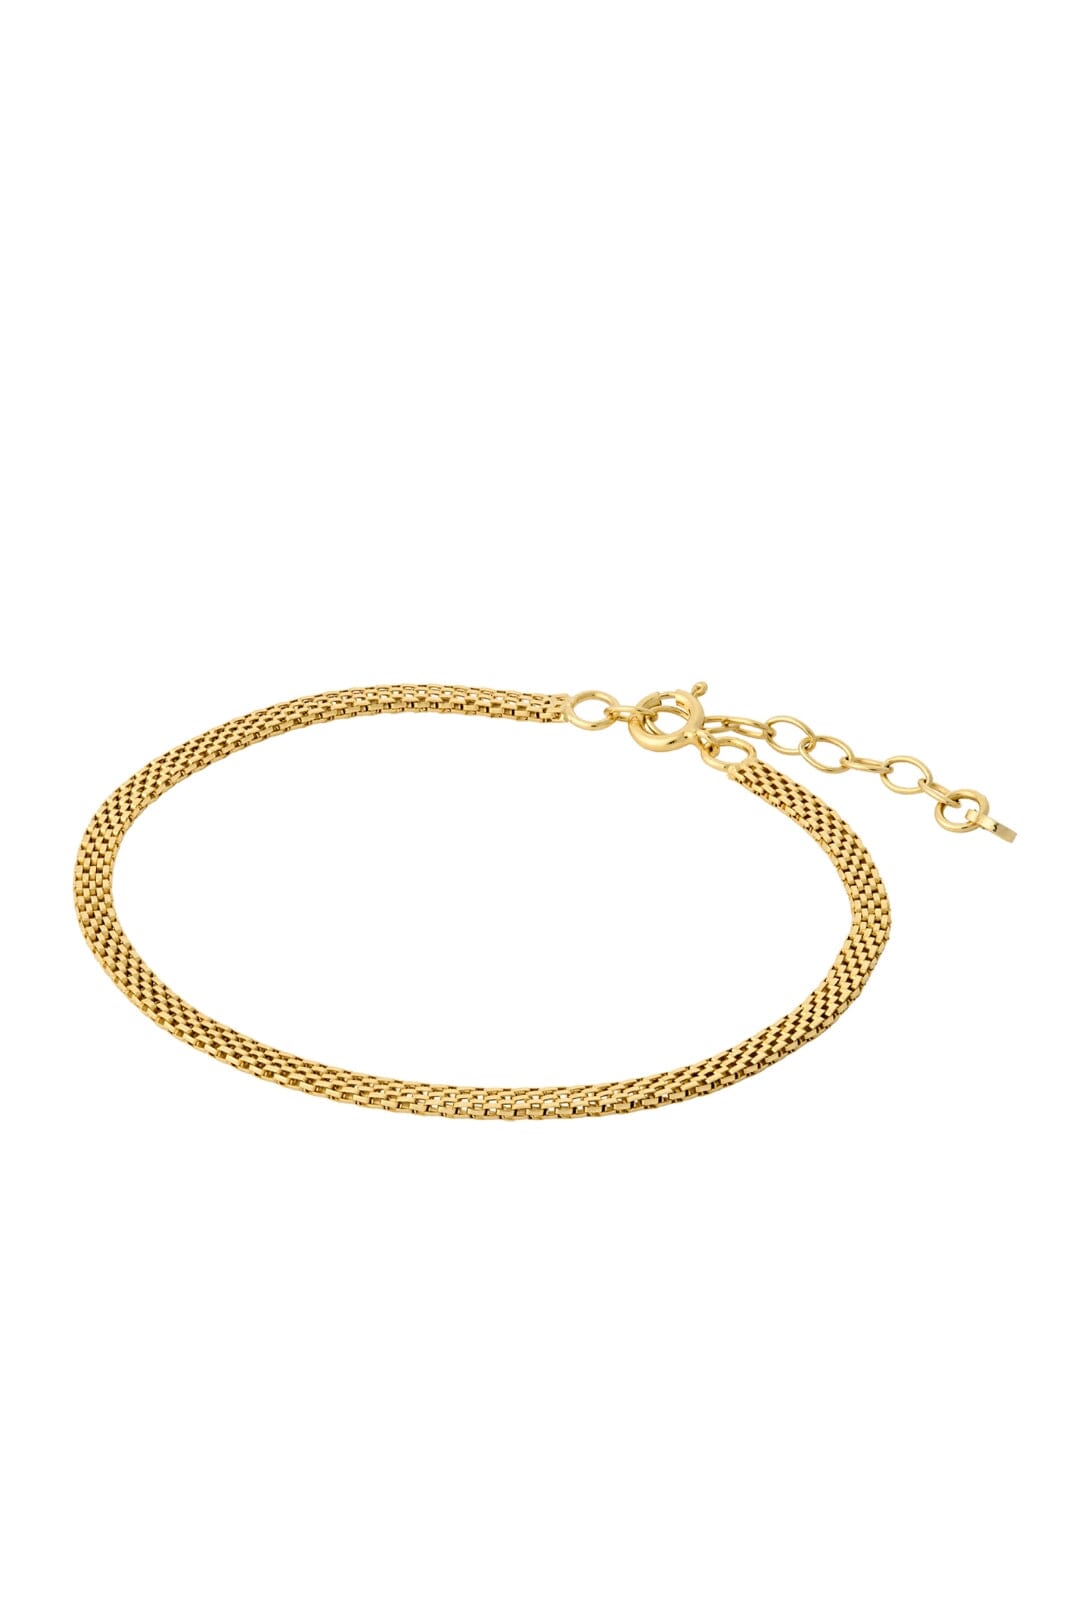 Pernille Corydon Jewellery - Nora Bracelet - Gold Plated Armbånd 